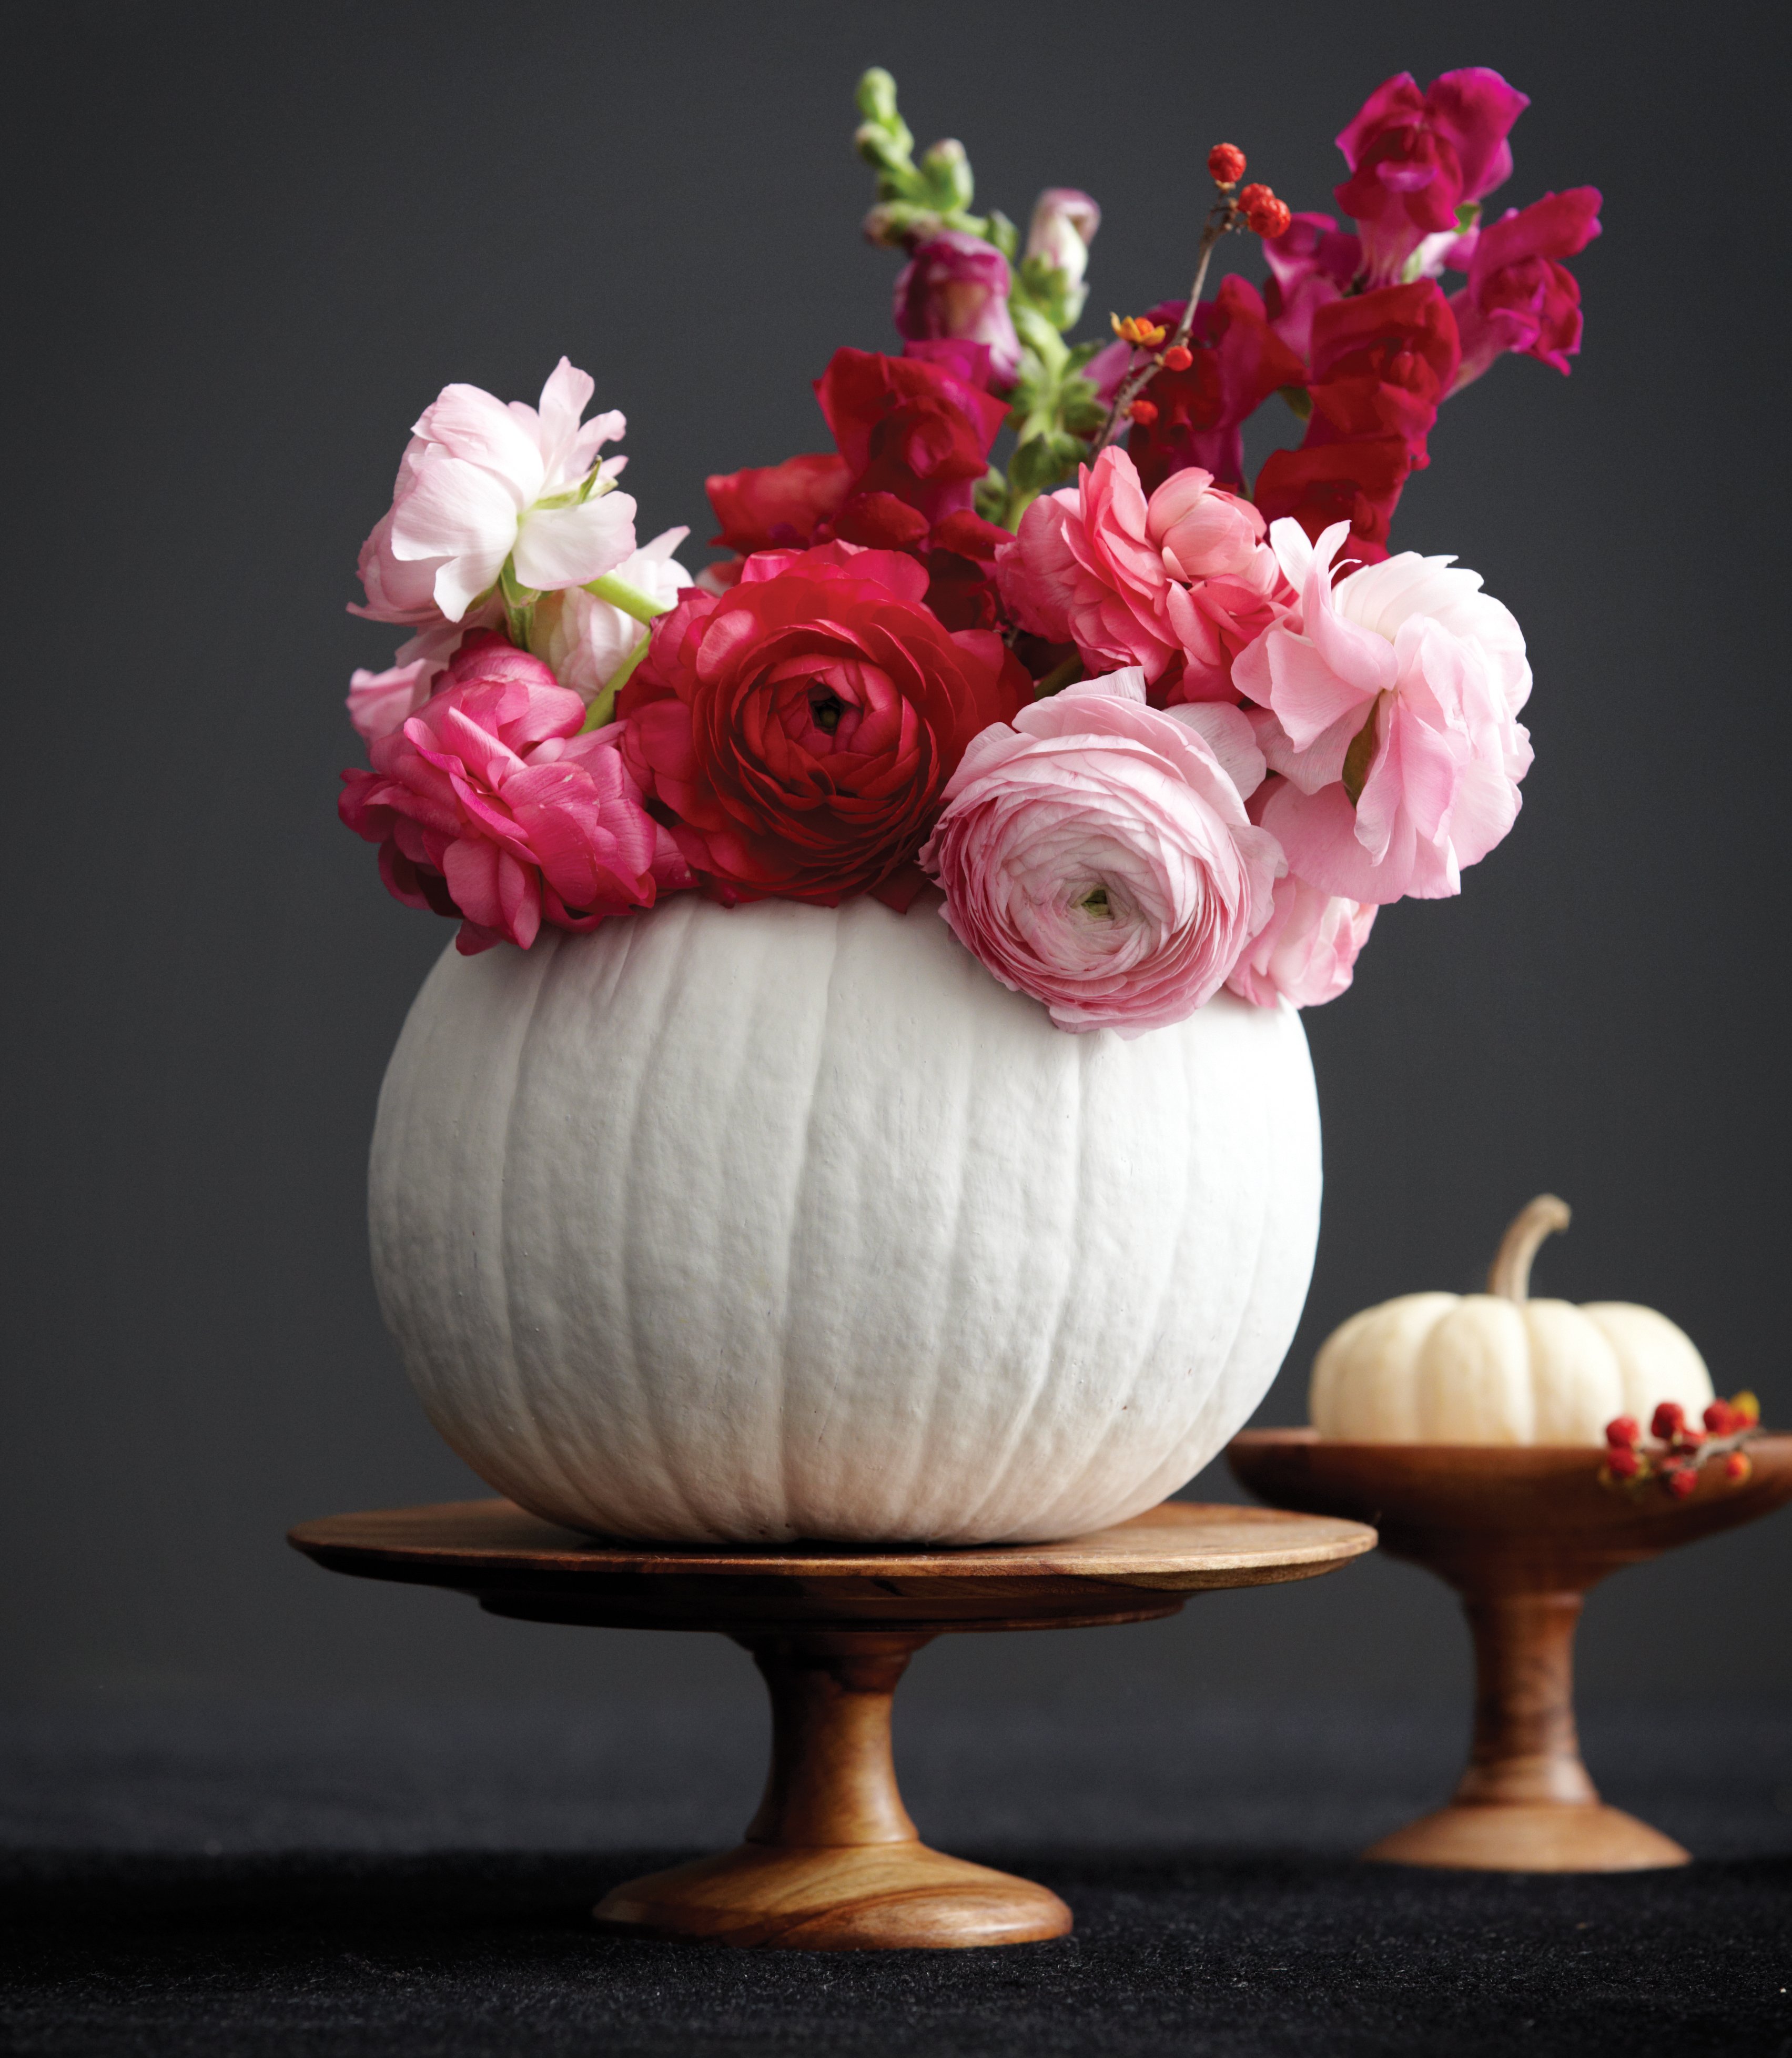 Pumpkin Decorating | Pinterest Picks - DIY Pumpkin Ideas